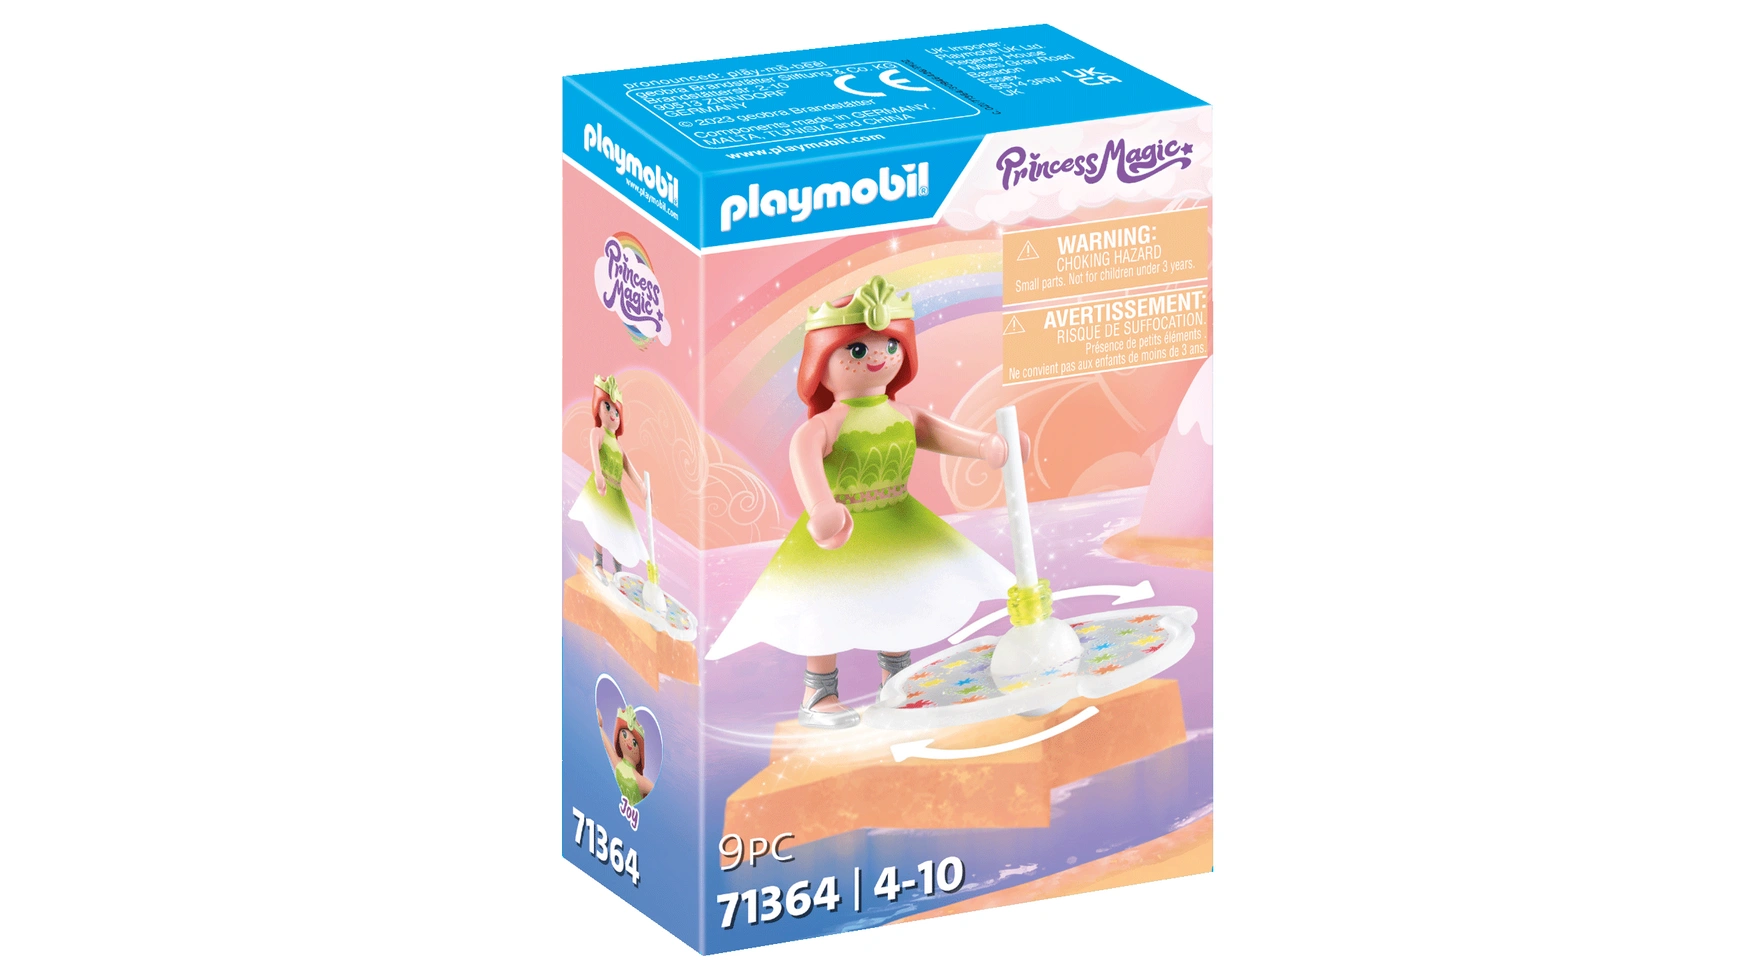 волшебная принцесса небесная экскурсия с жеребенком пегасом playmobil Princess magic небесный радужный топ с принцессой Playmobil